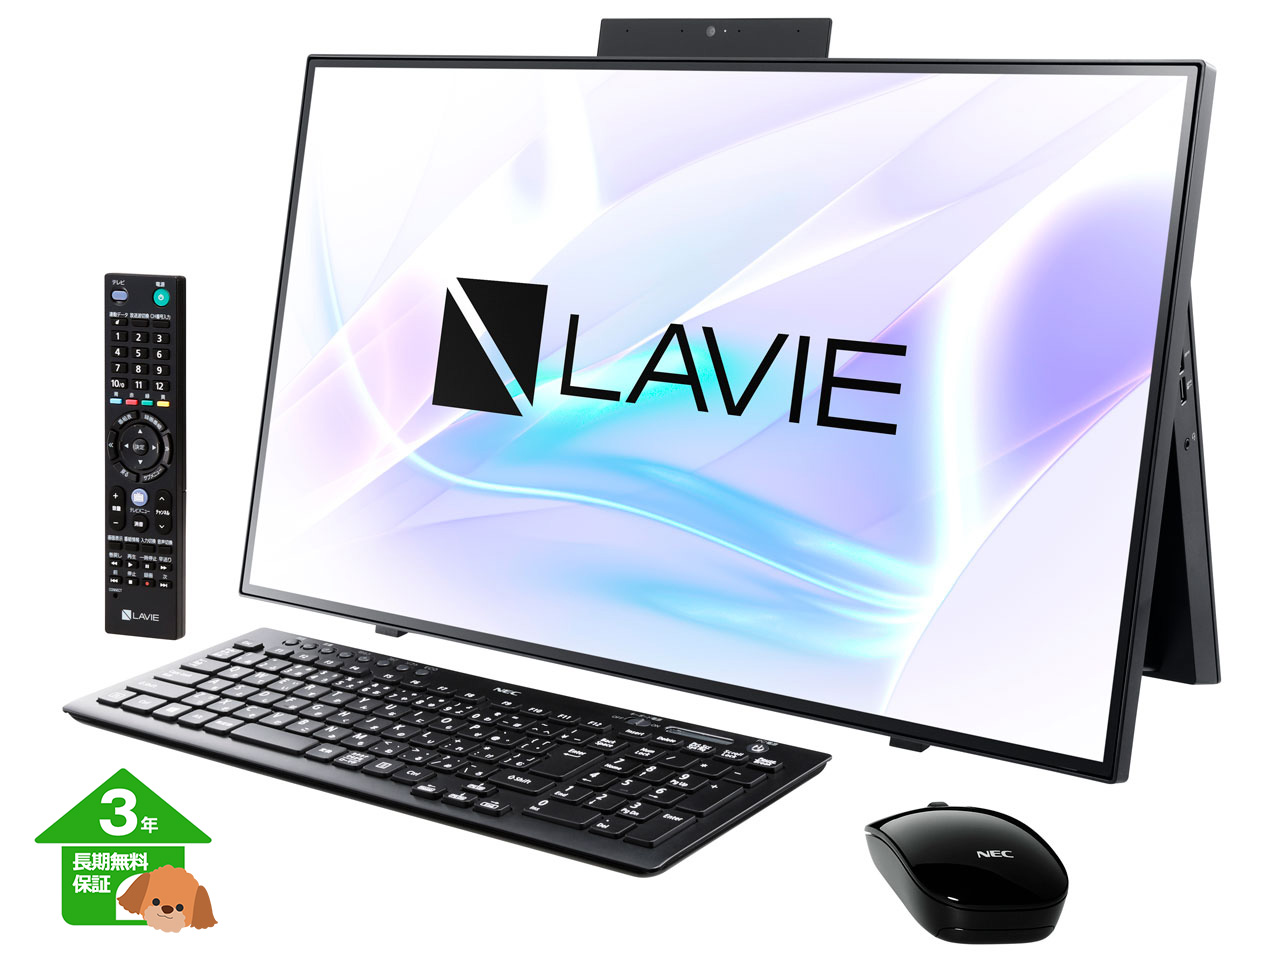 【エヌイーシー】 LAVIE Home All-in-one  オールインワン デスクトップパソコン 27型【3年保証】